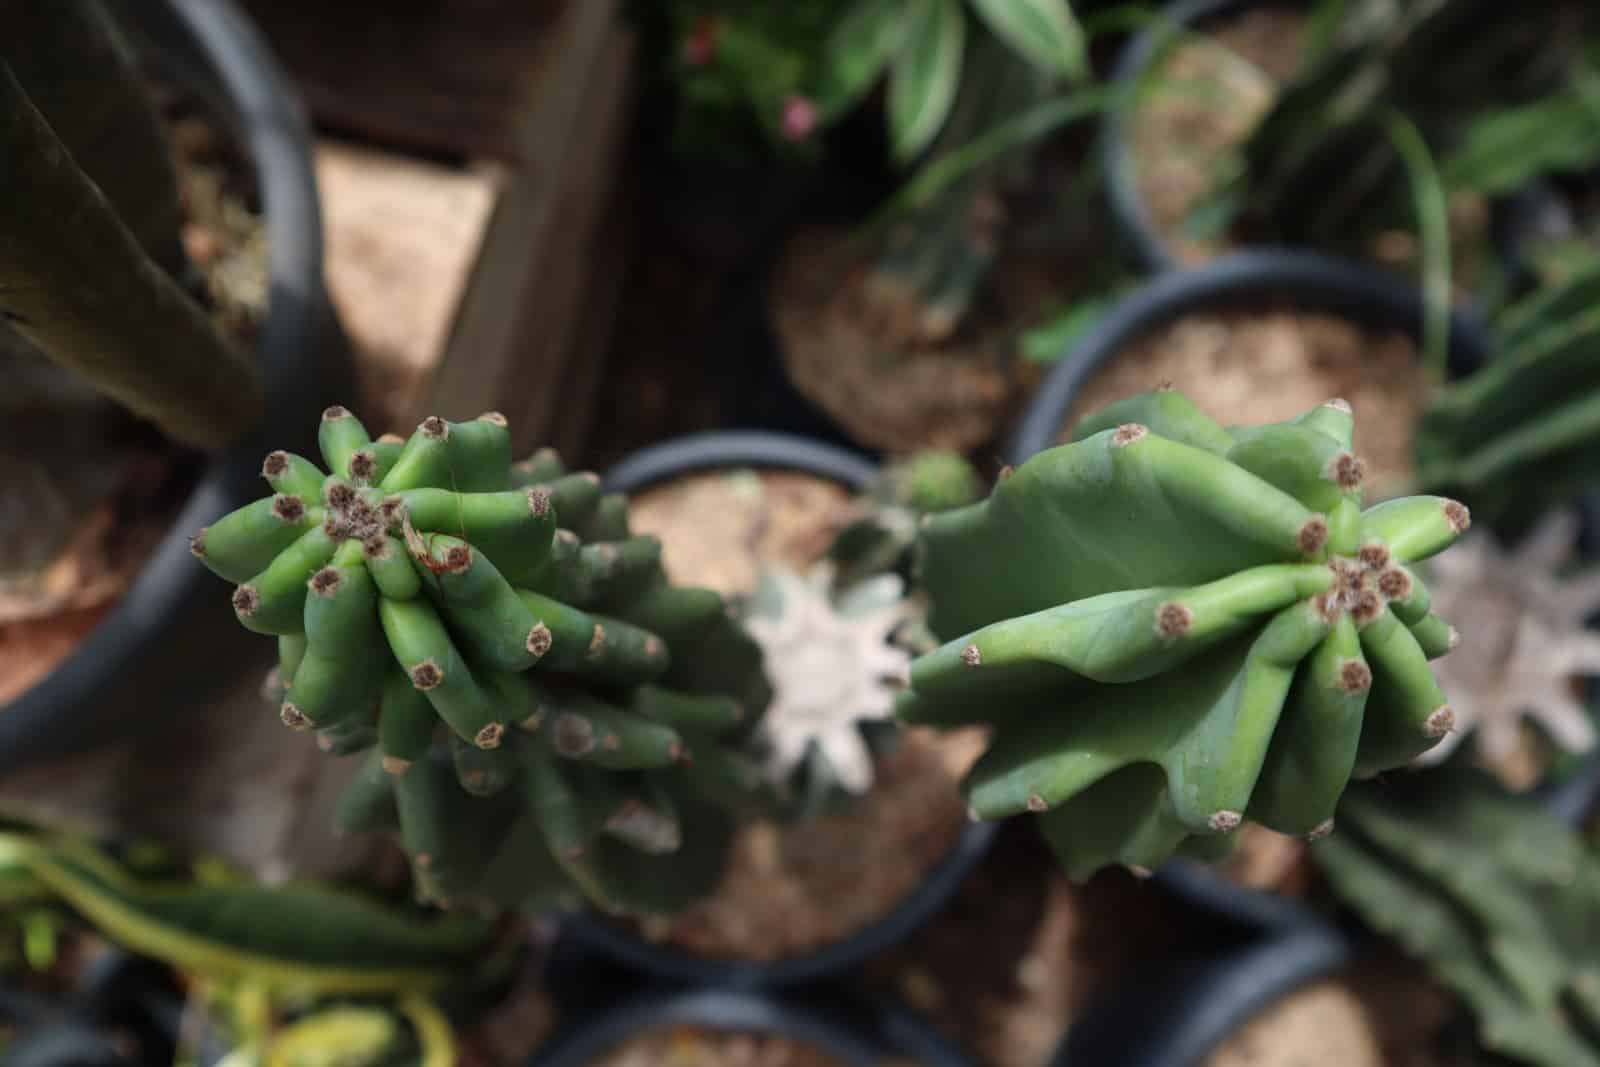 Blue myrtle cactus stem tip appearance